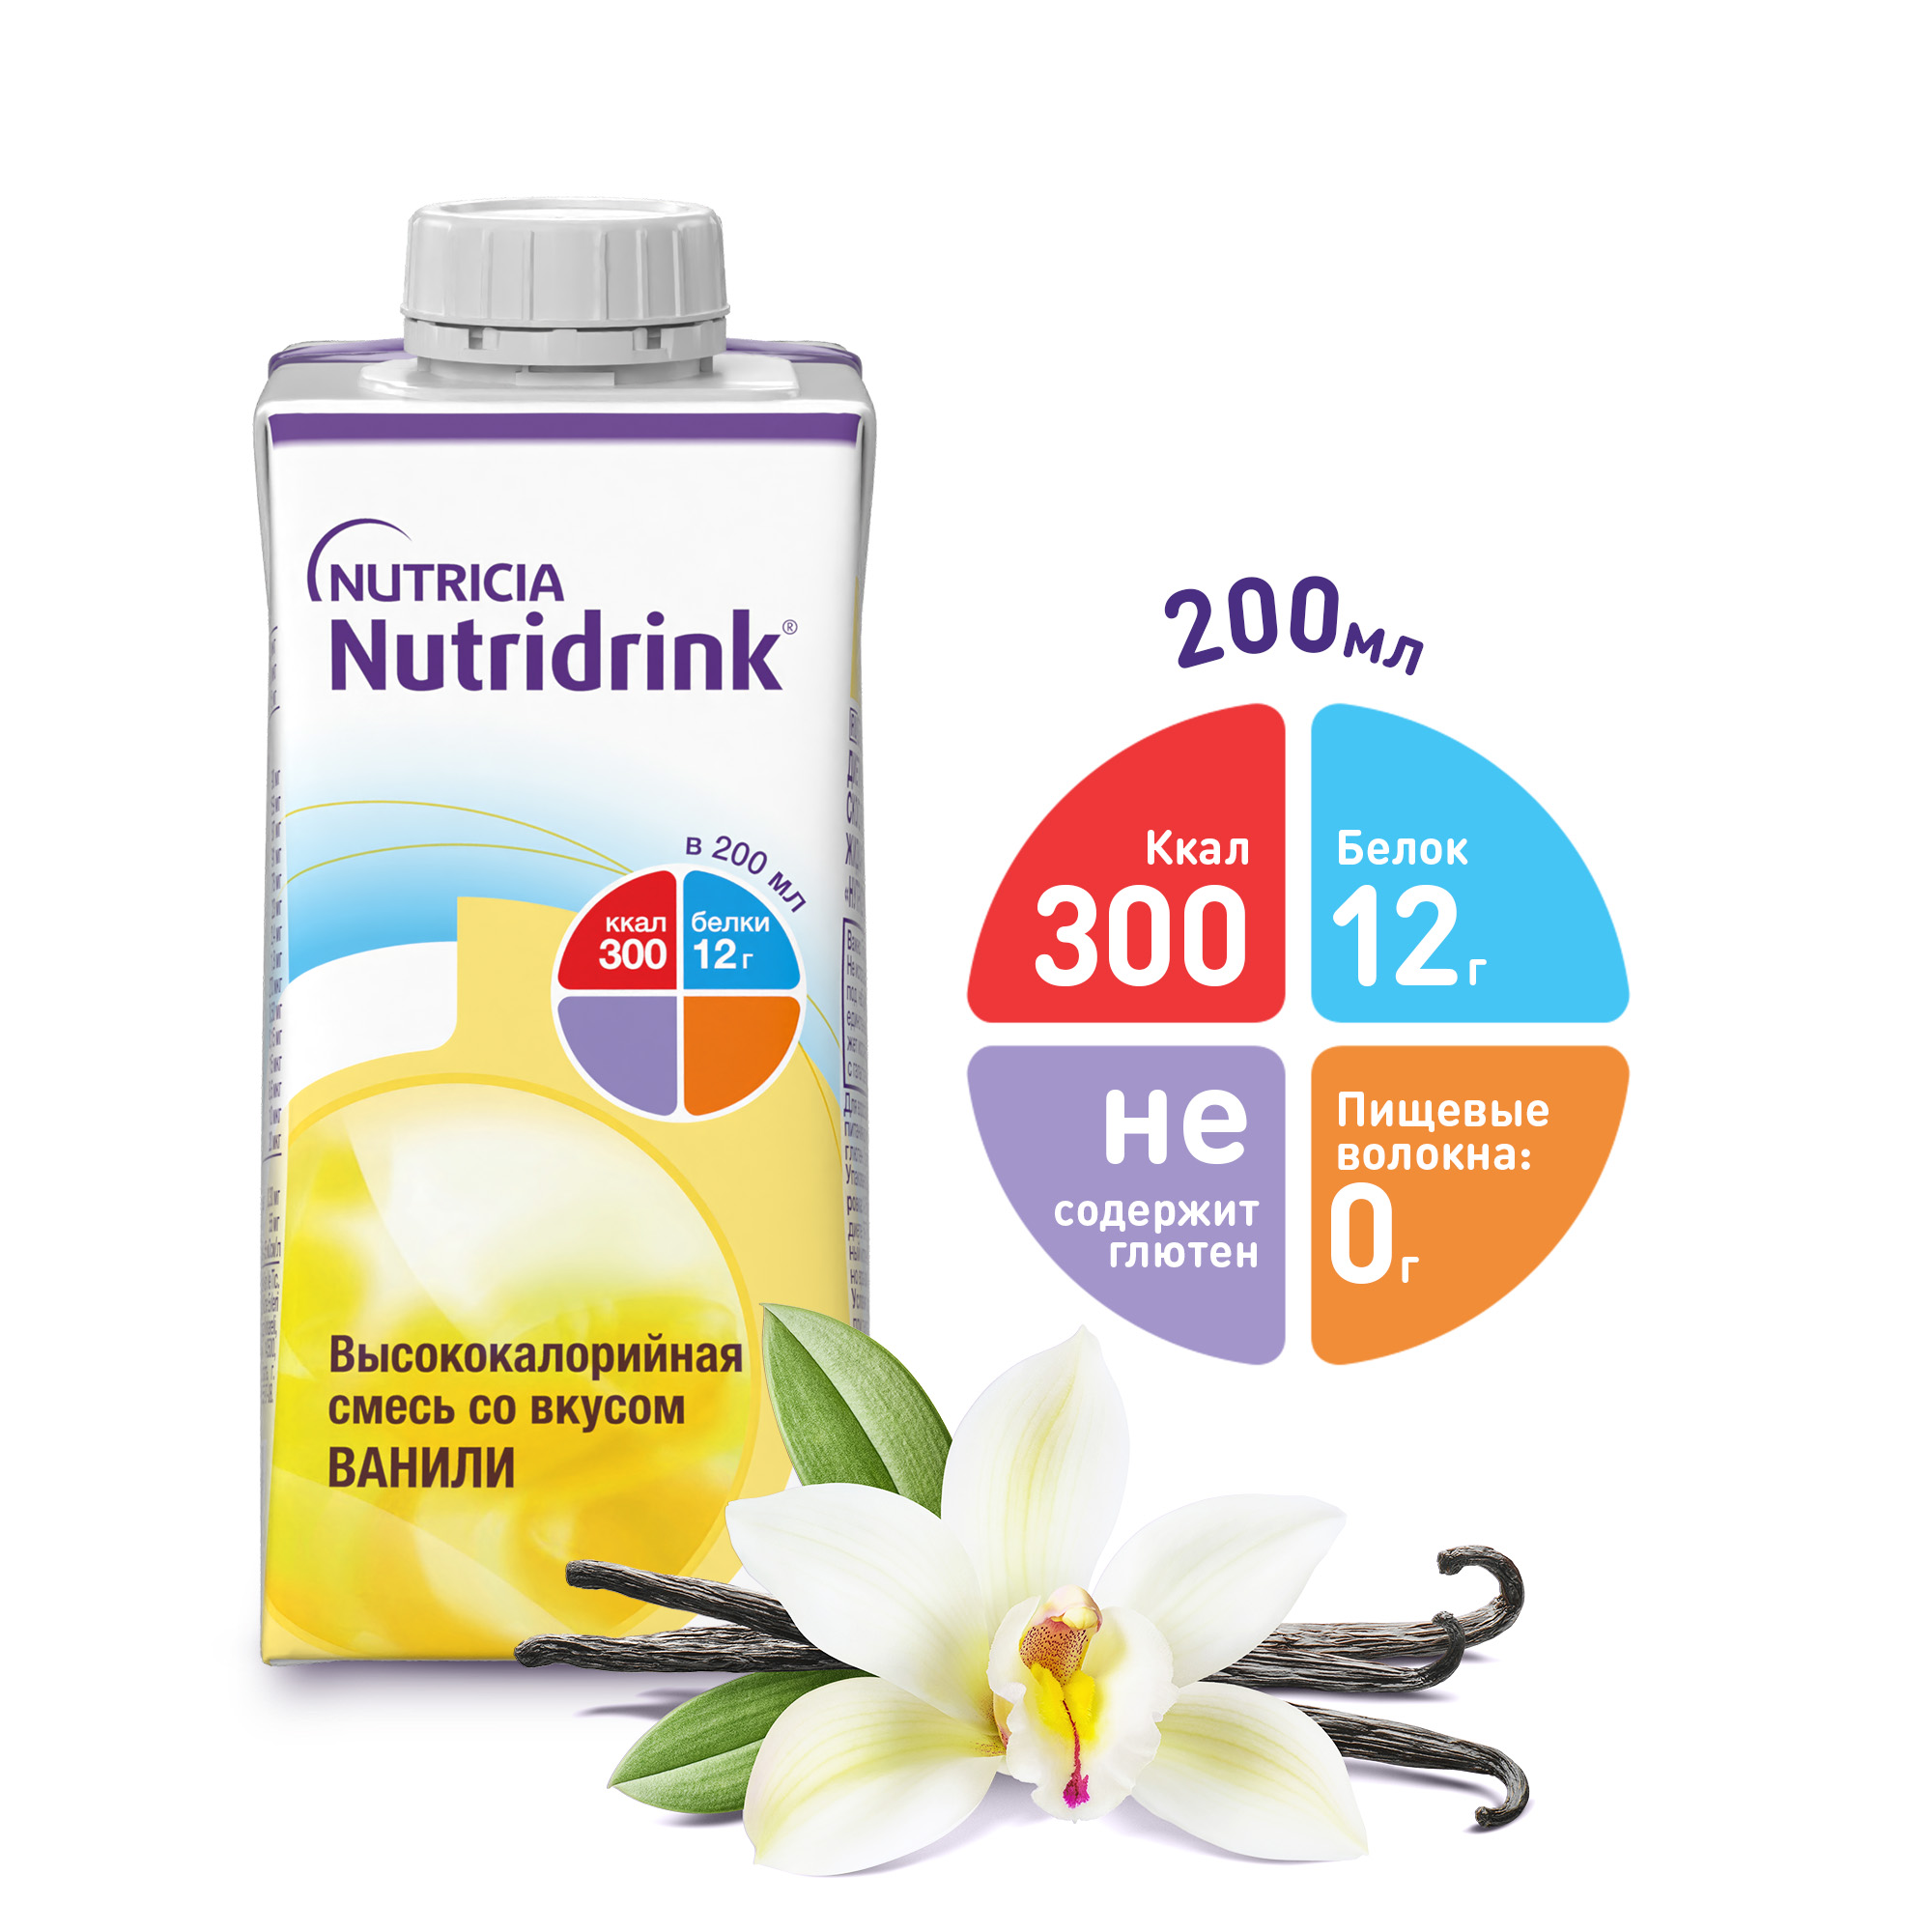 Купить Нутридринк смесь ваниль 200мл, Nutricia